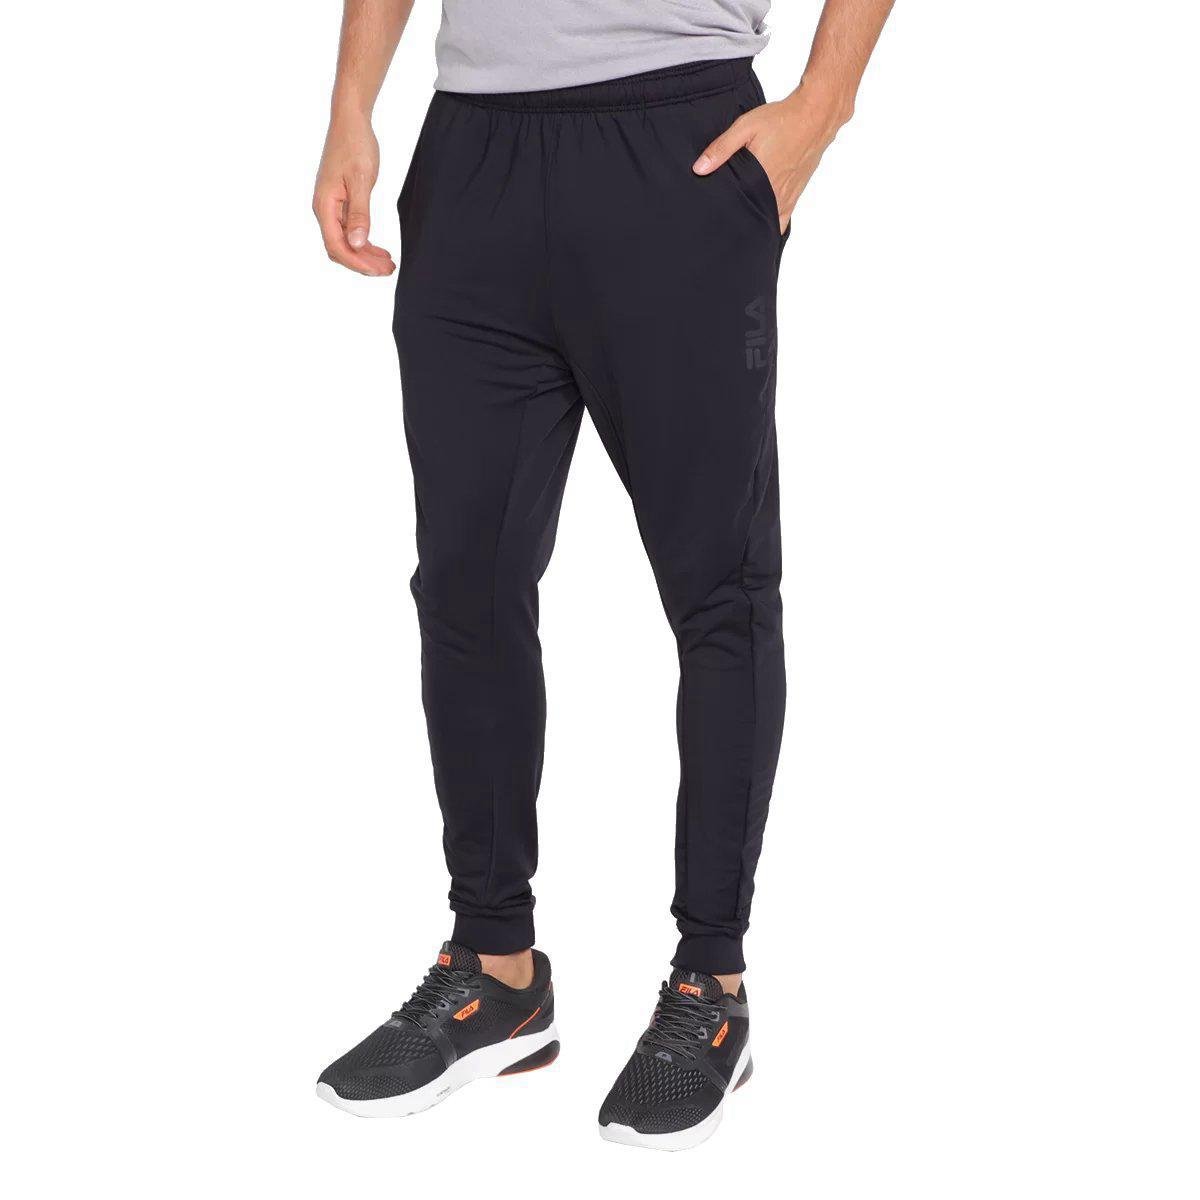 Fila Sport Black Active Pants Size M - 66% off